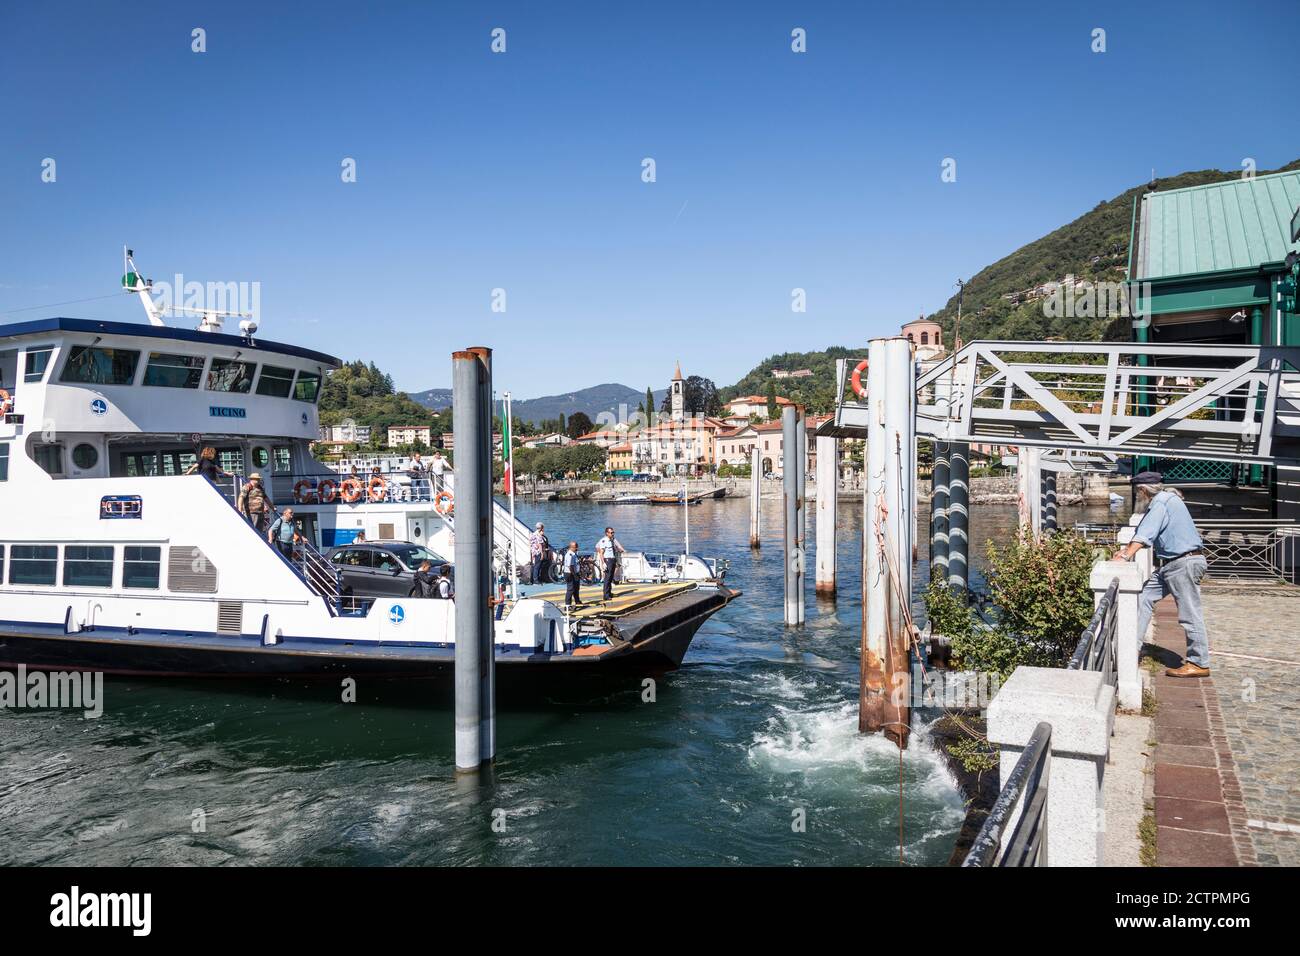 El ferry de coche llega al embarcadero de Laveno, Lago Maggiore (Lago Maggiore), Lombardía, Italia Foto de stock